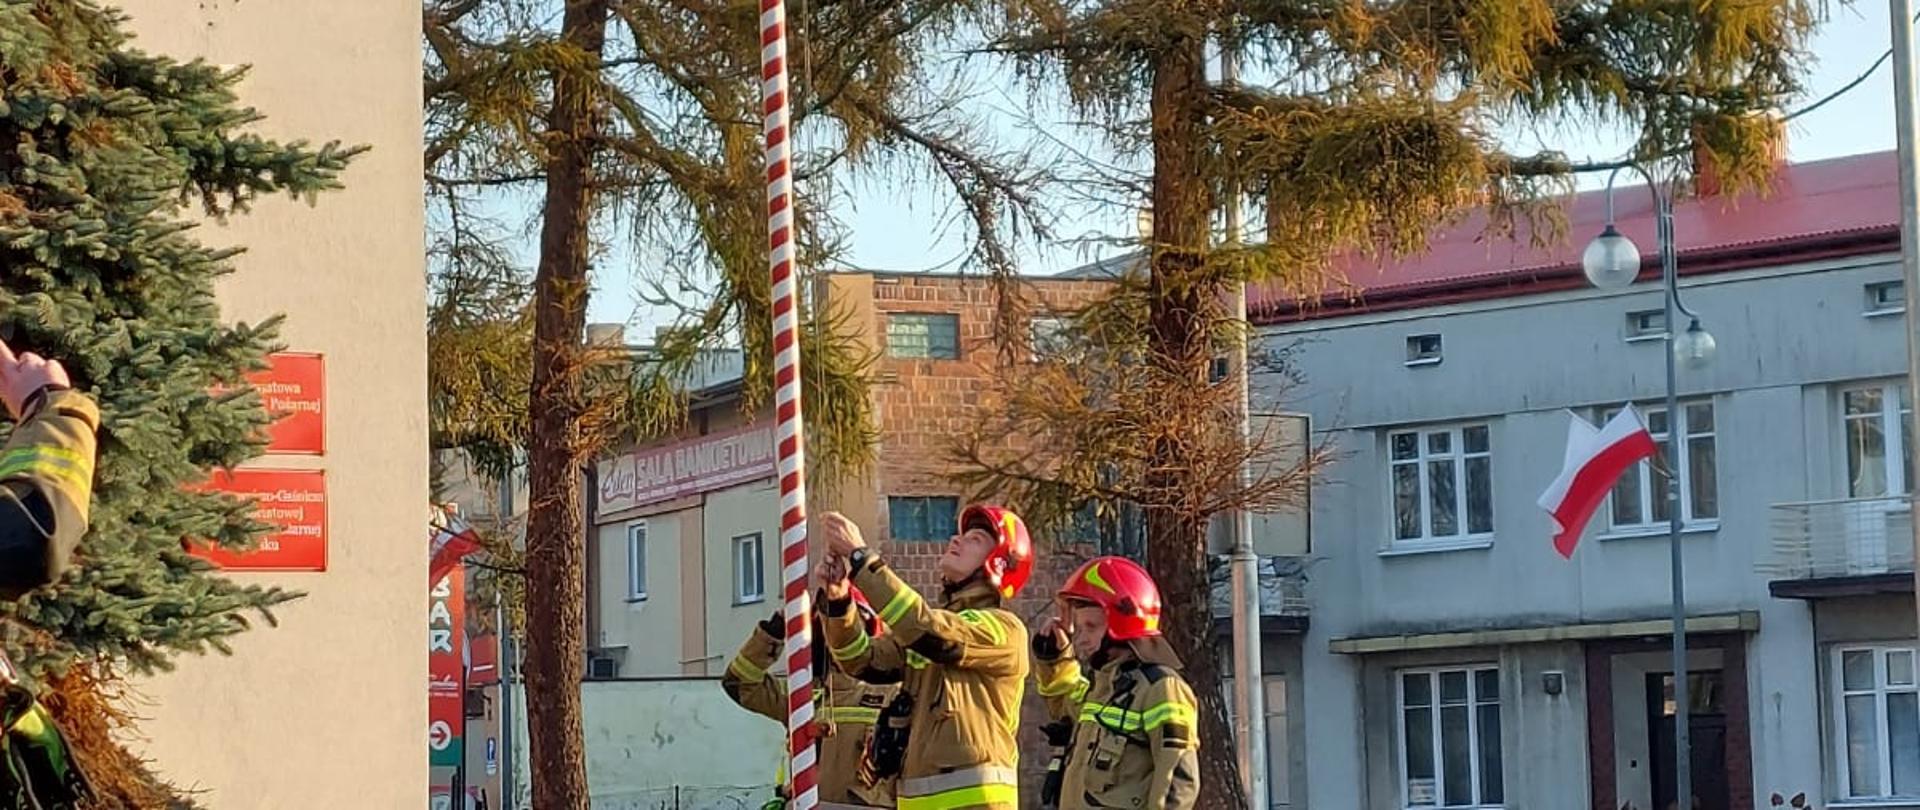 Trzech strażaków w ubraniach bojowych w czerwonych hełmach na głowie stojących obok masztu. Jeden z nich wciąga flagę Polski. W tle budynek komendy